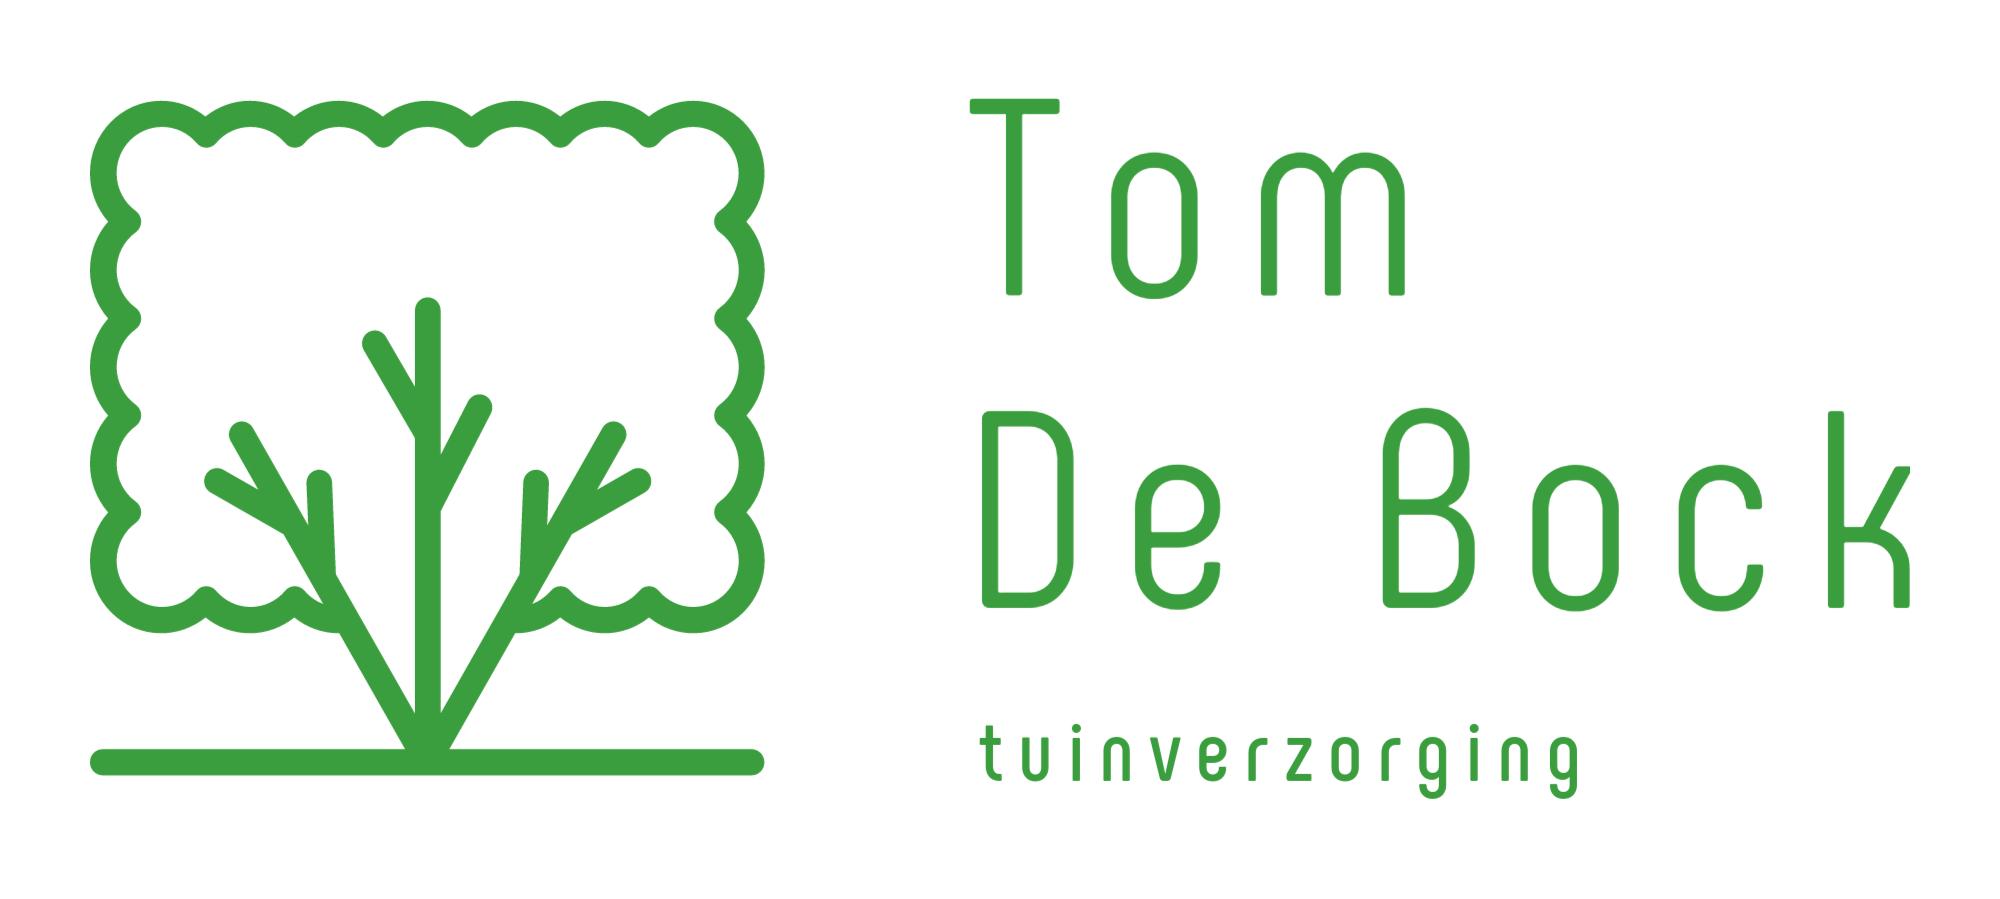 tuinmannen Beveren-Waas | Tuinverzorging Tom De Bock